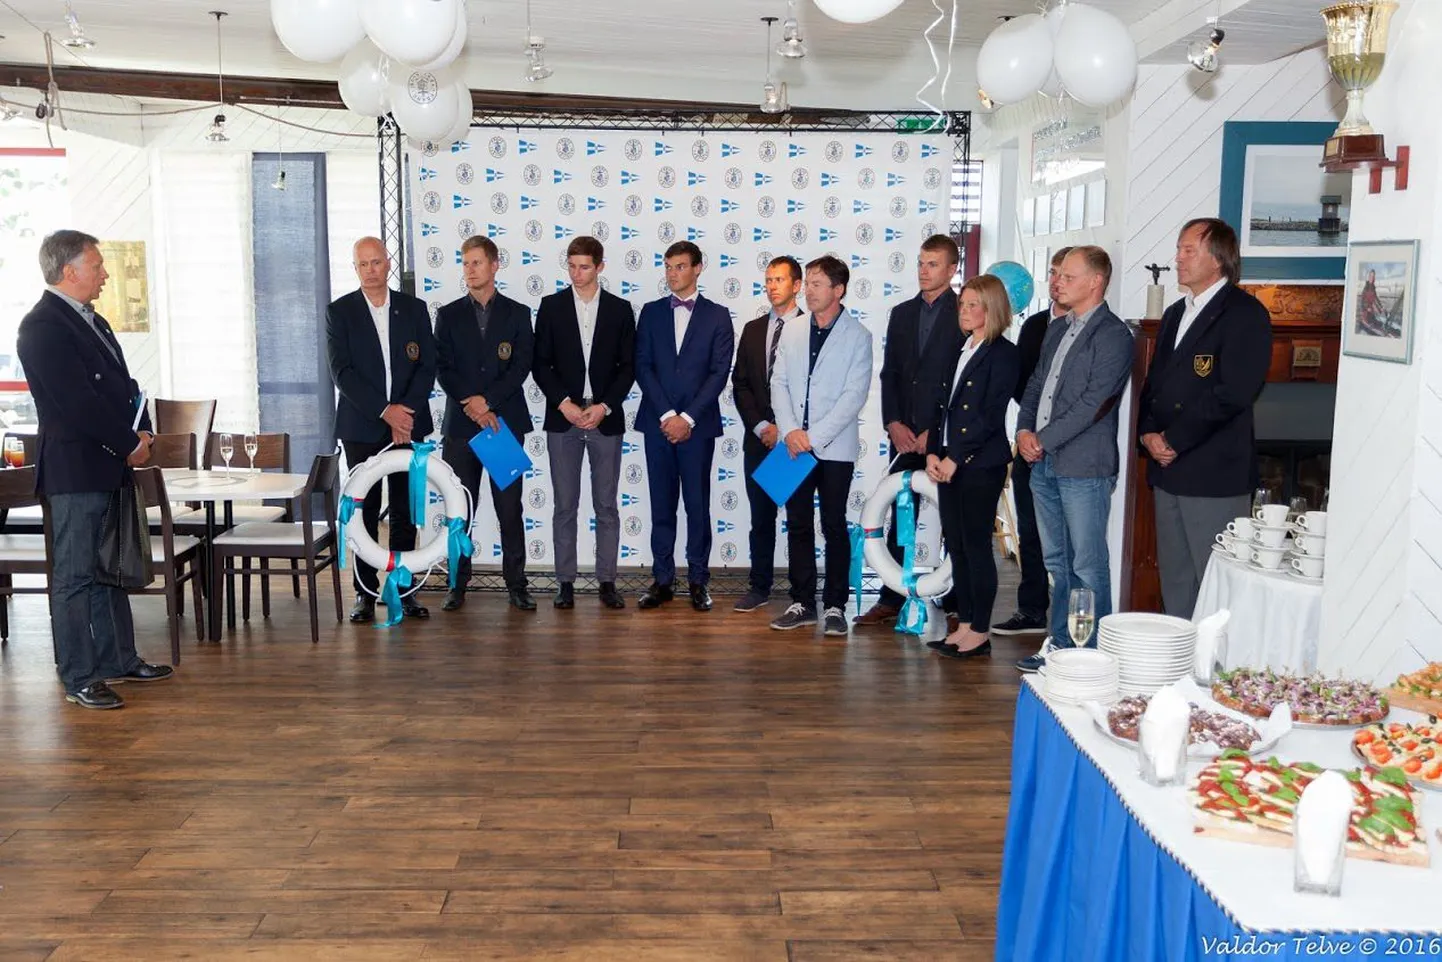 Eesti jahtklubide liidu president Egon Elstein tänab medalivõitjaid tehtud töö eest.